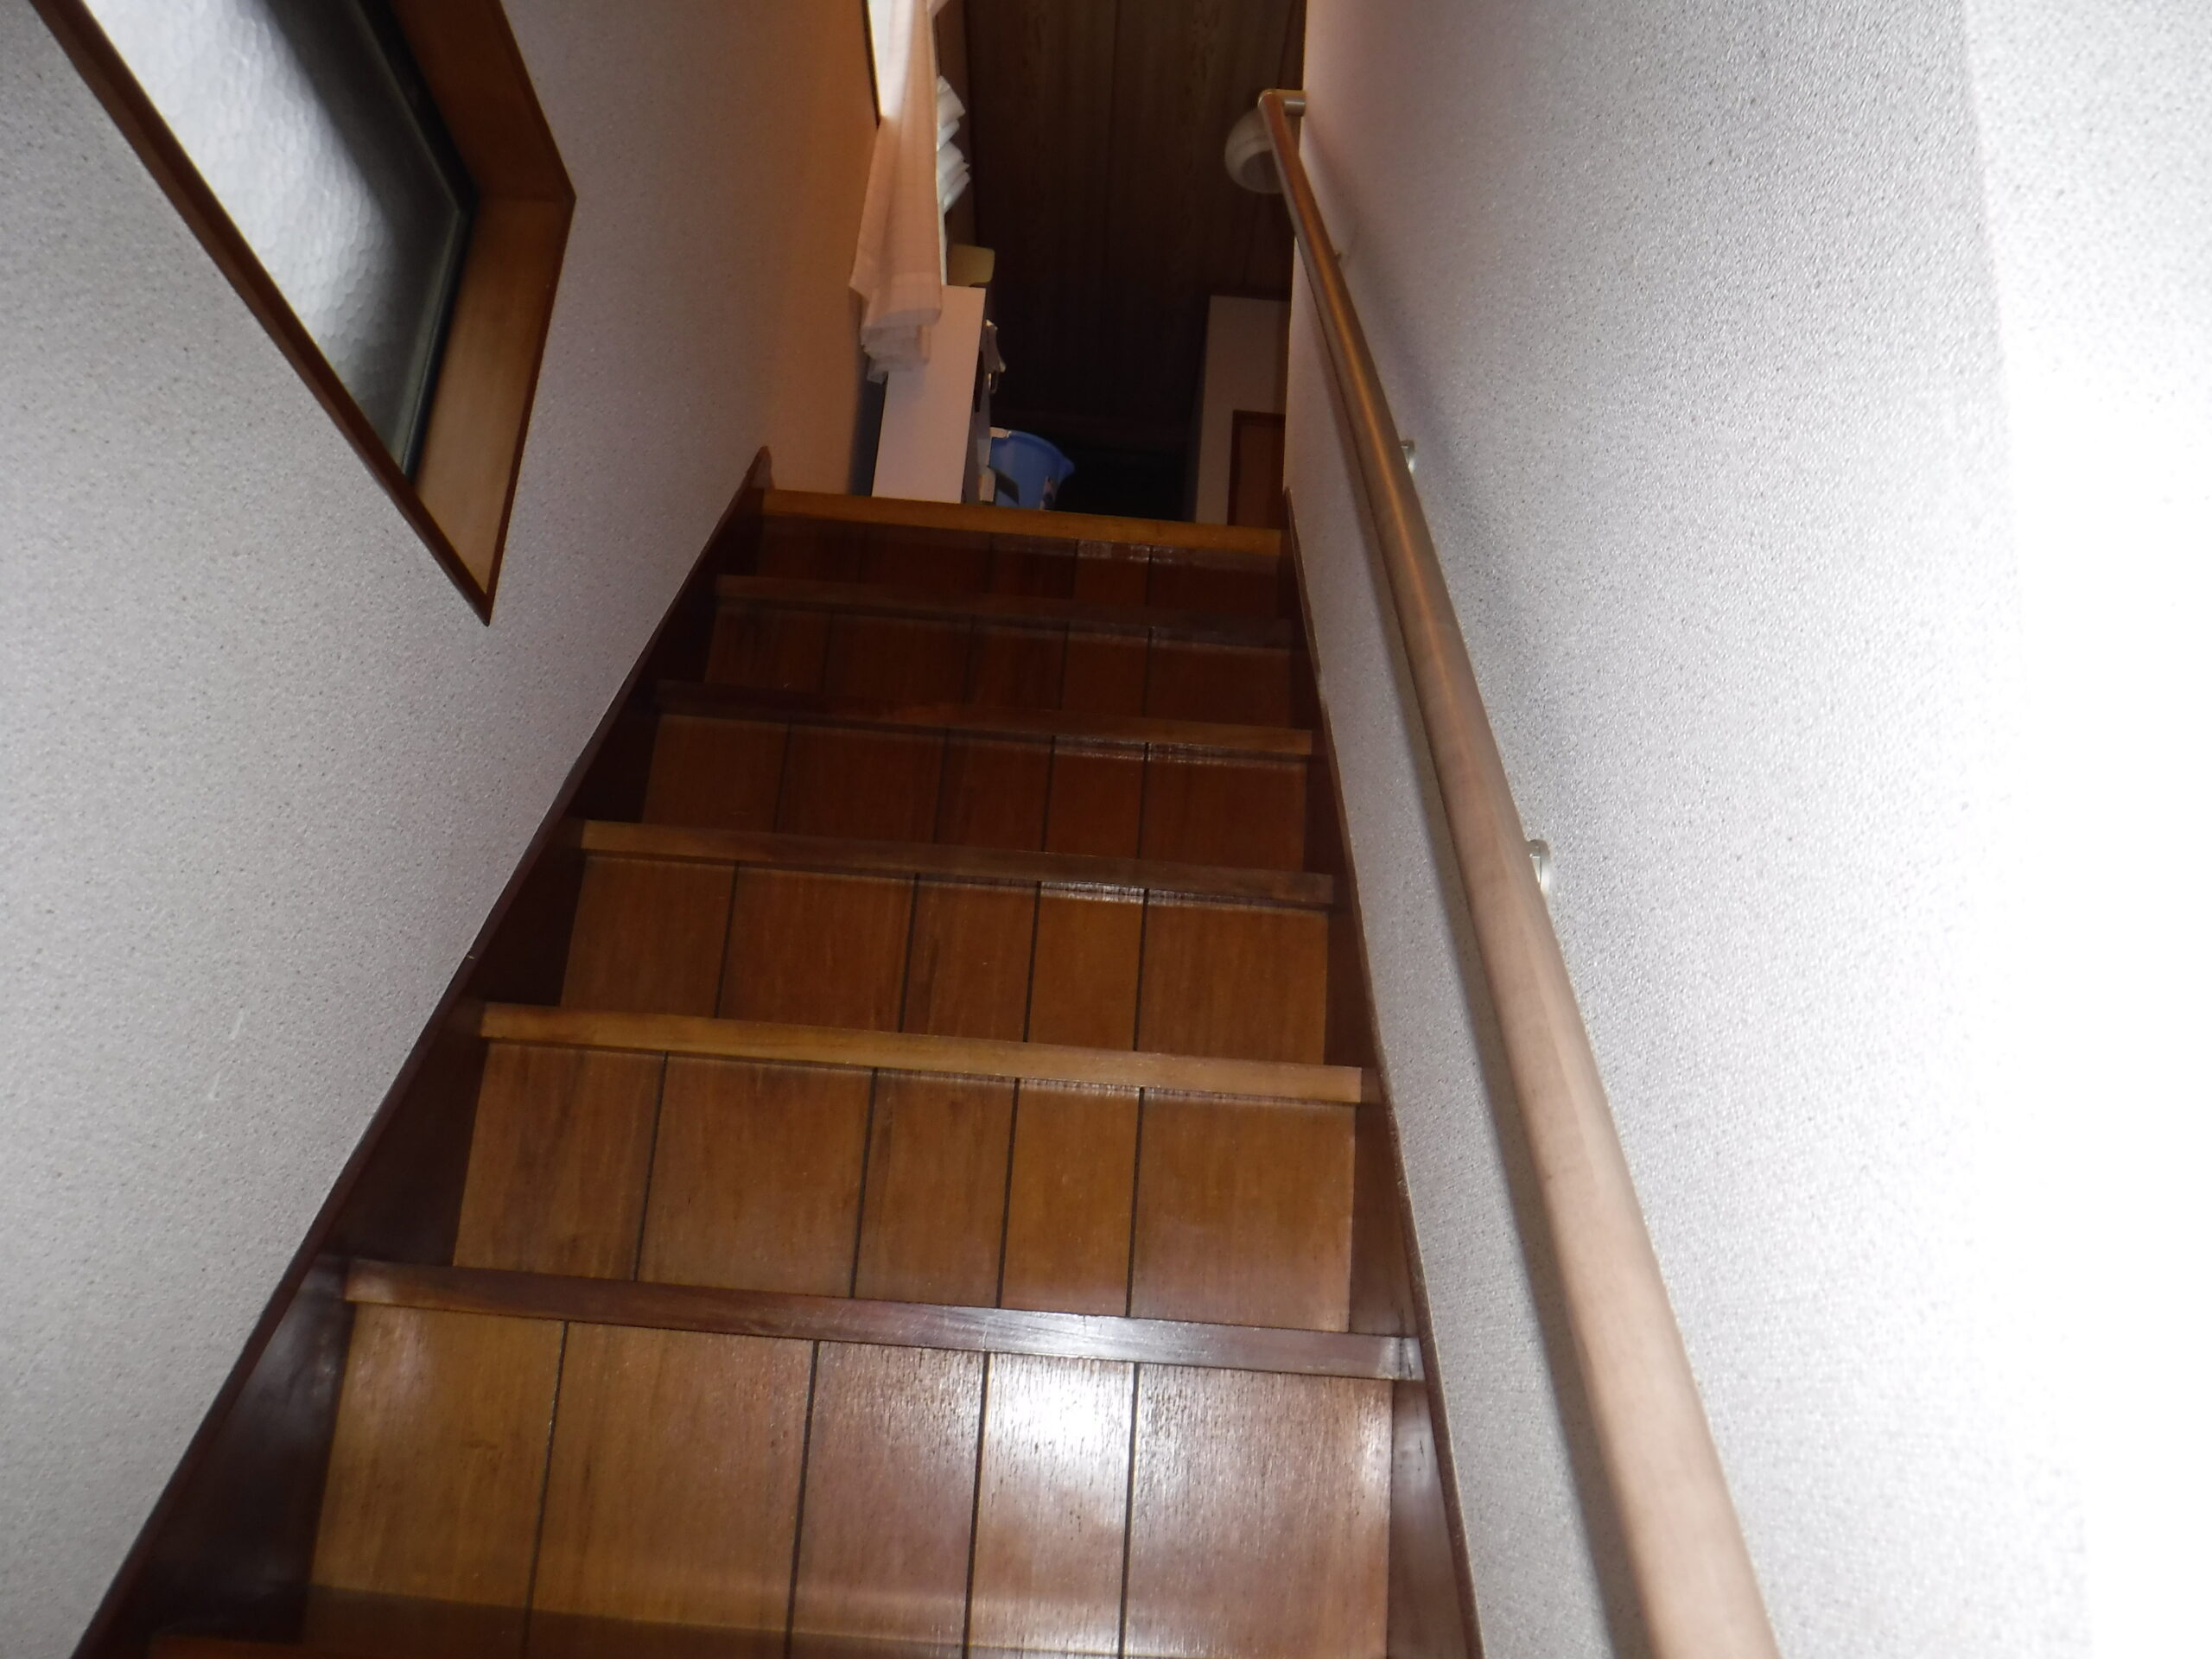 千葉市中央区A様邸で階段に手摺取付ました。